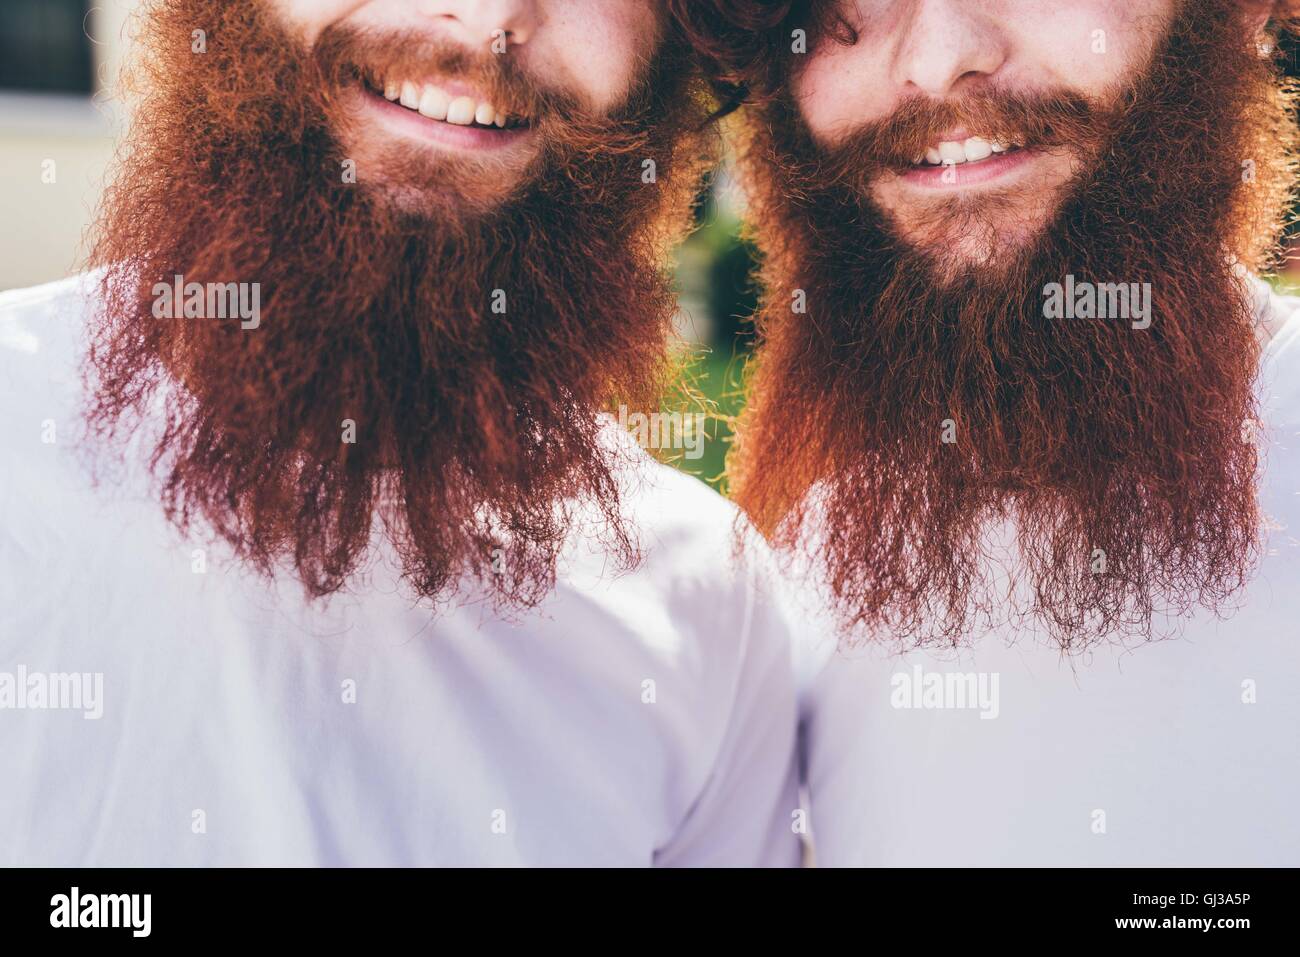 Ritagliato Ritratto di giovane maschio hipster gemelli con la barba rossa indossare magliette di colore bianco Foto Stock